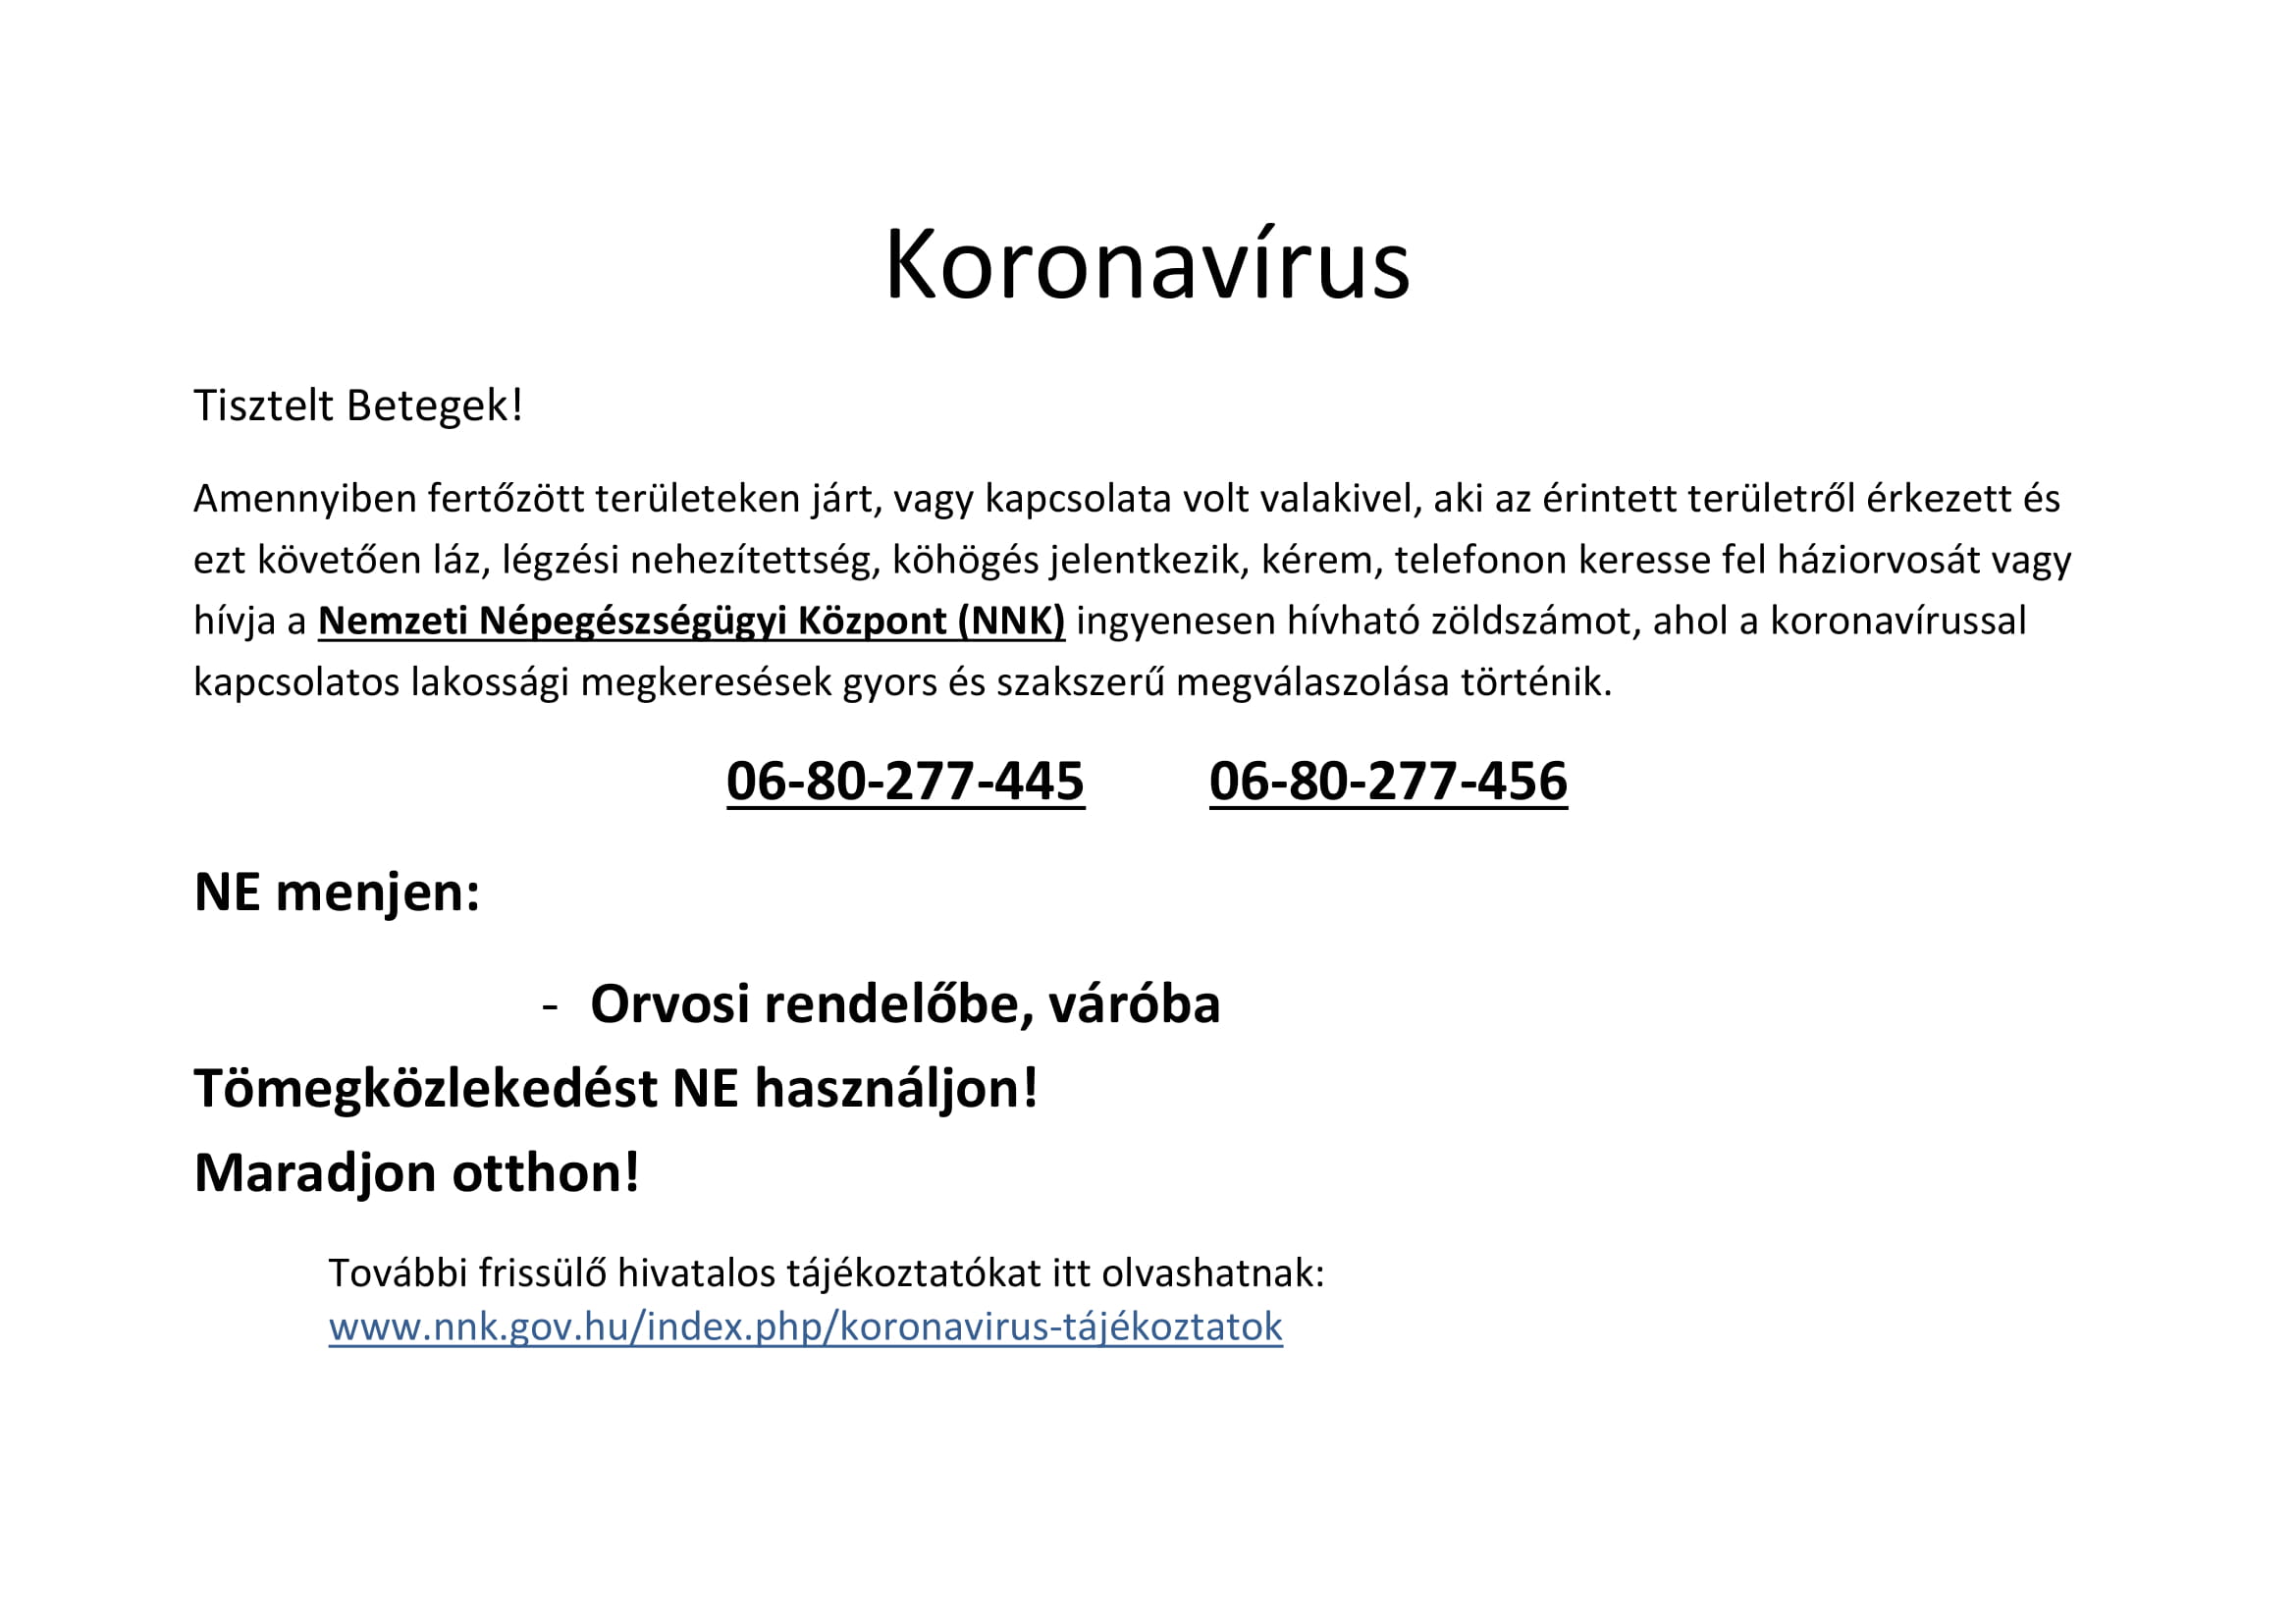 Tájékoztató a koronavírusról az Országos Orvosi Ügyelet Nonprofit Kft. részéről